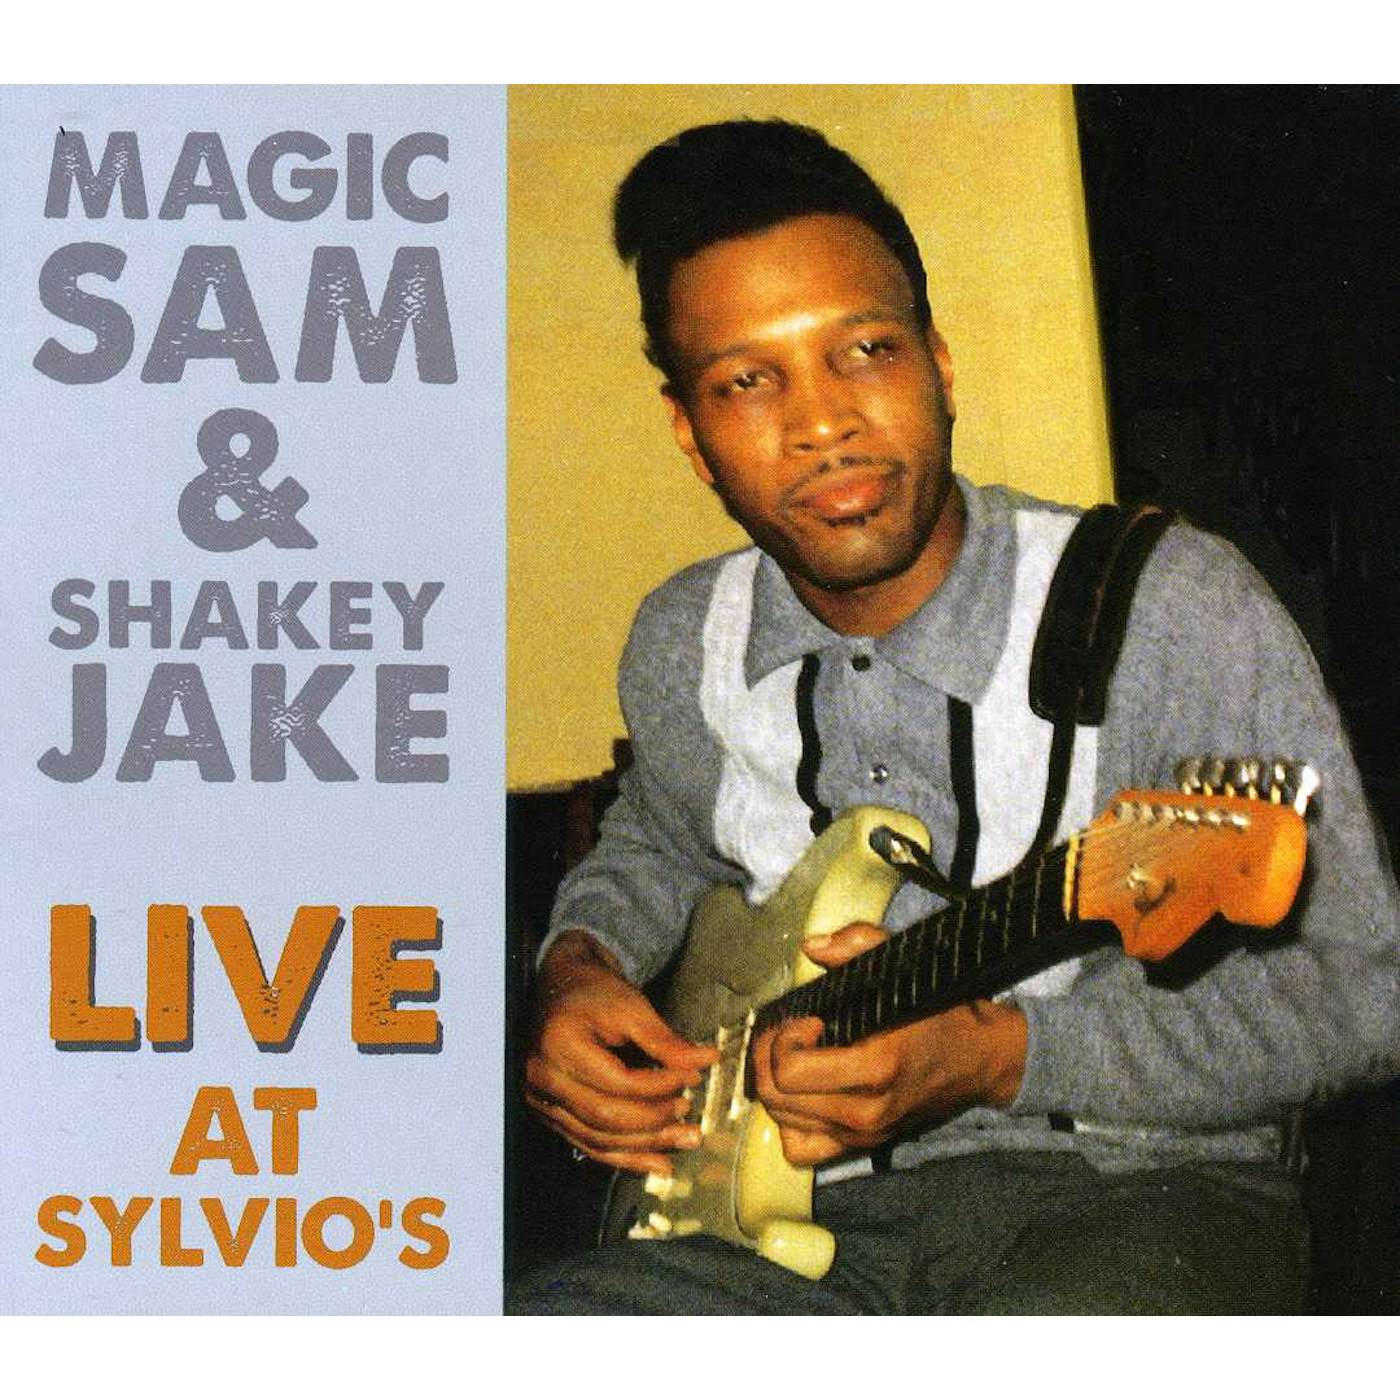 MAGIC SAM & SHAKEY JAKE LIVE AT SYLVIO'S CD